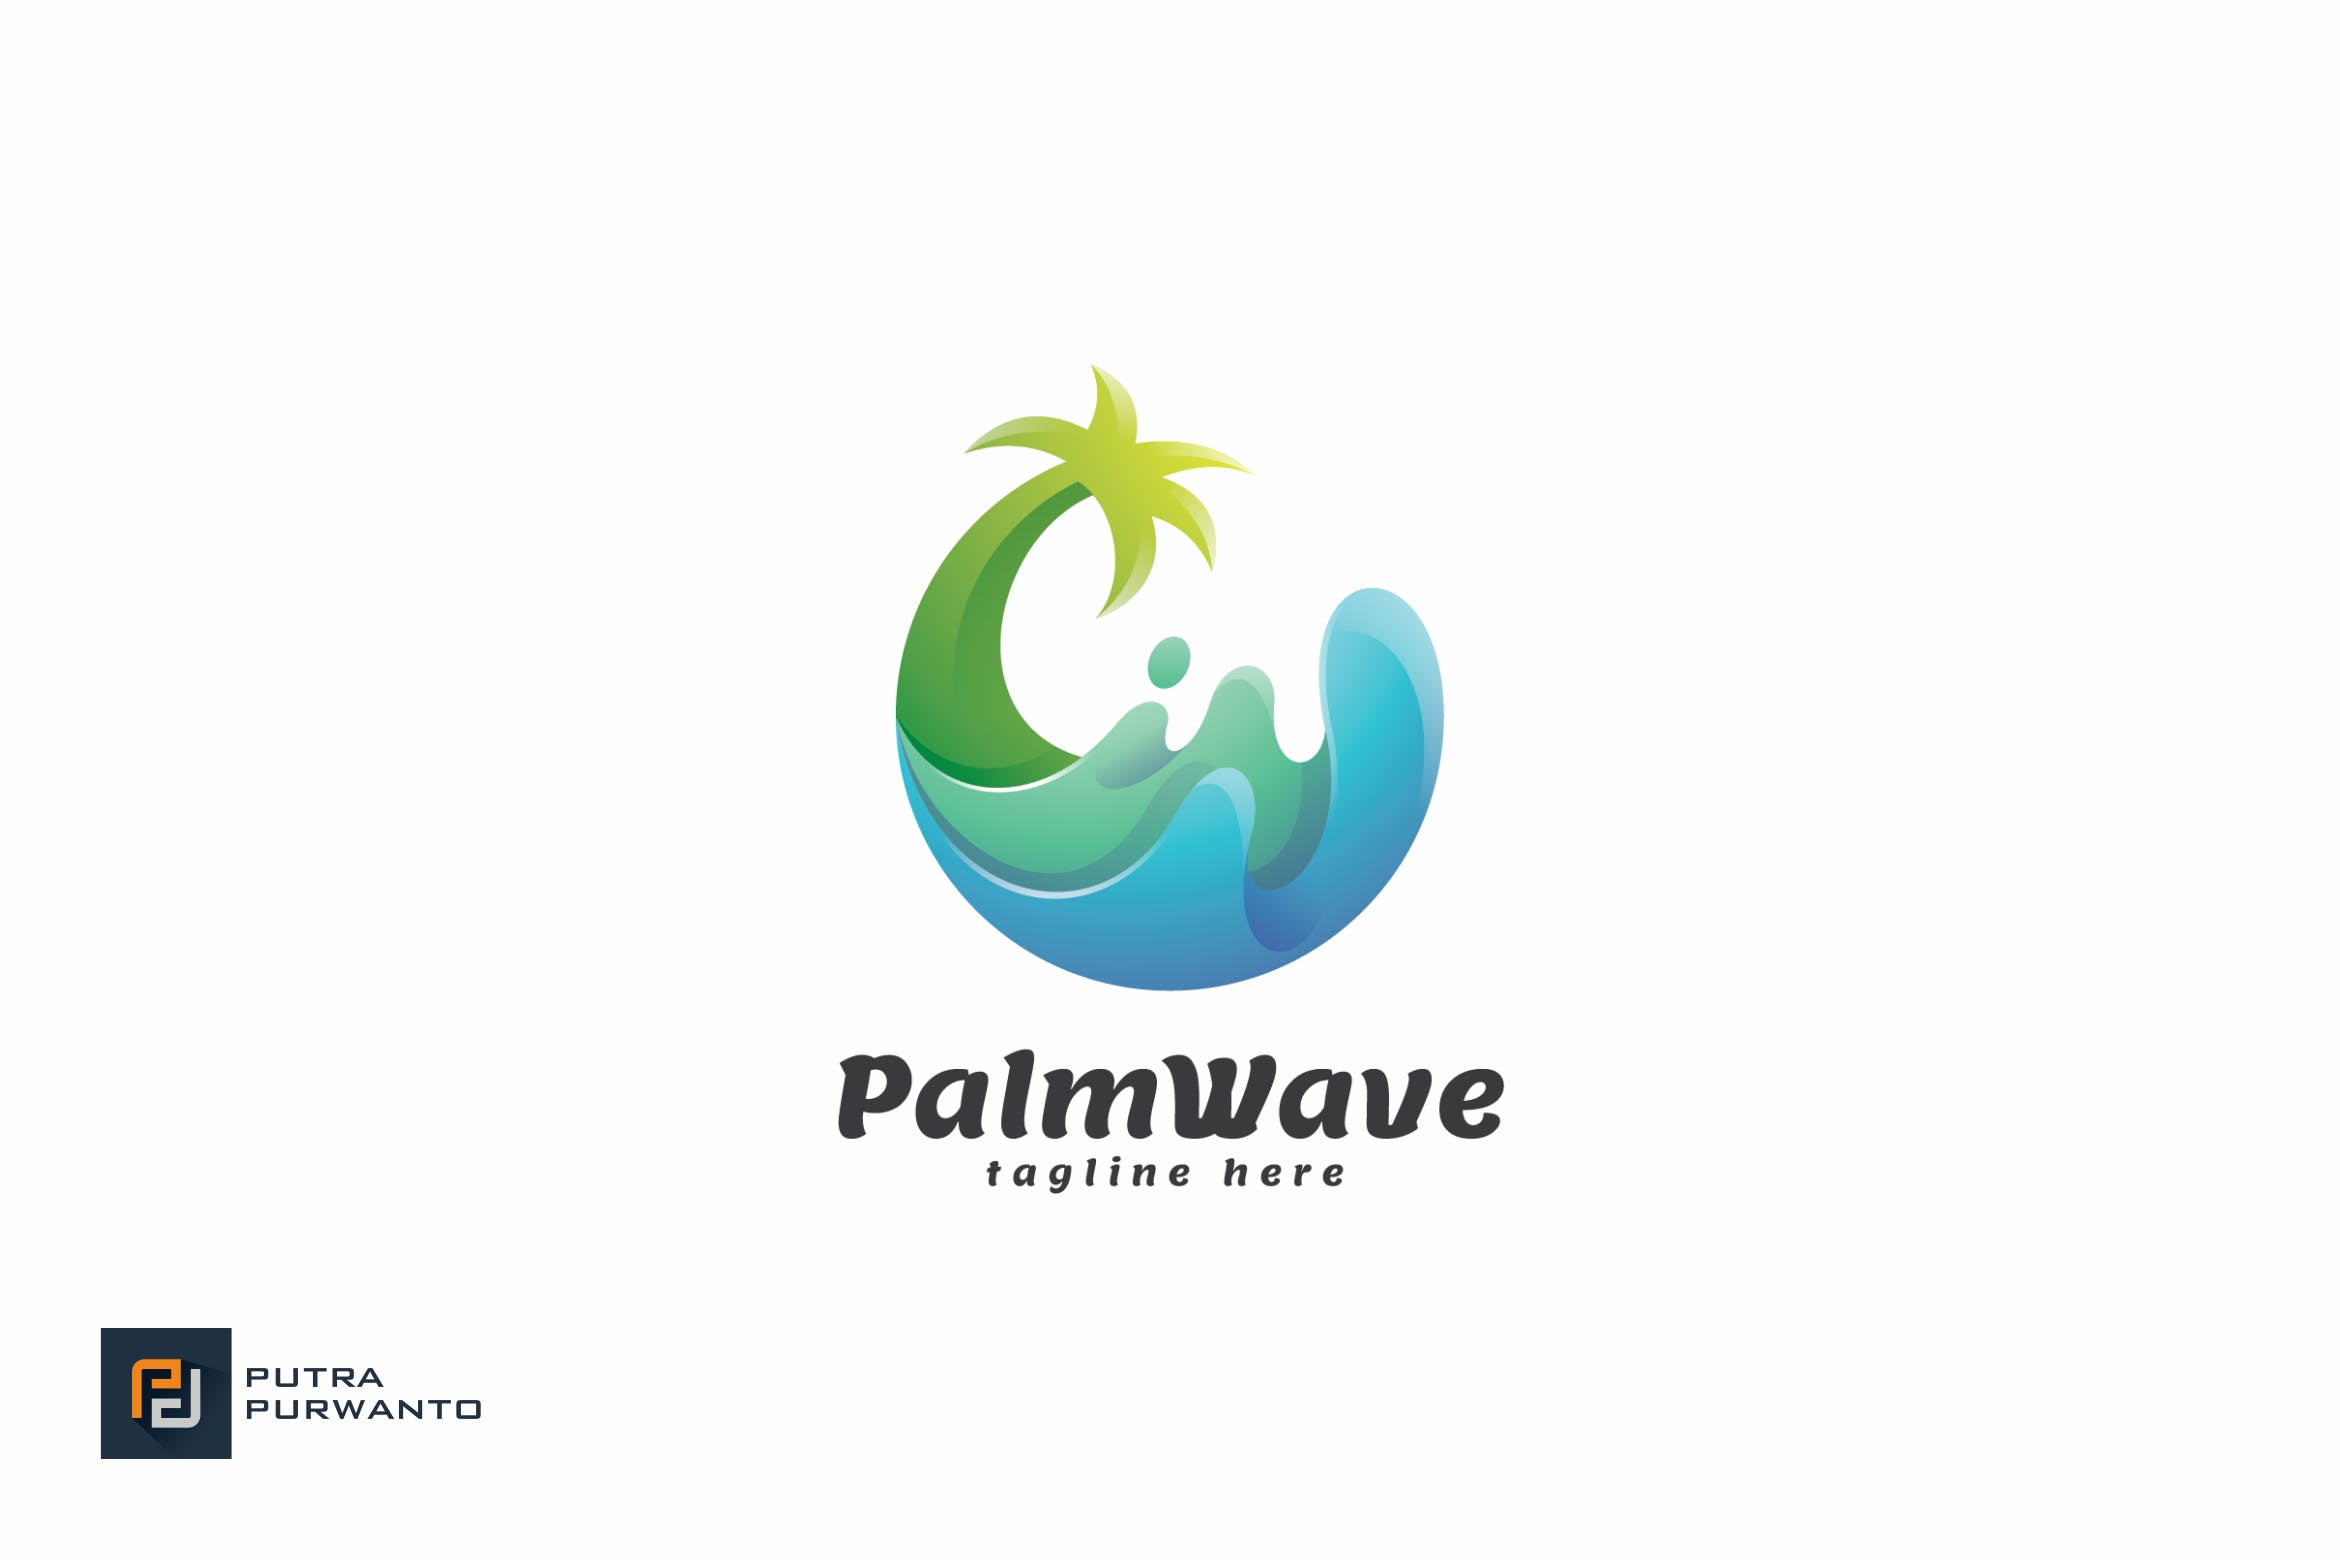 棕榈树&海浪几何图形Logo设计素材库精选模板 Palm Wave – Logo Template插图